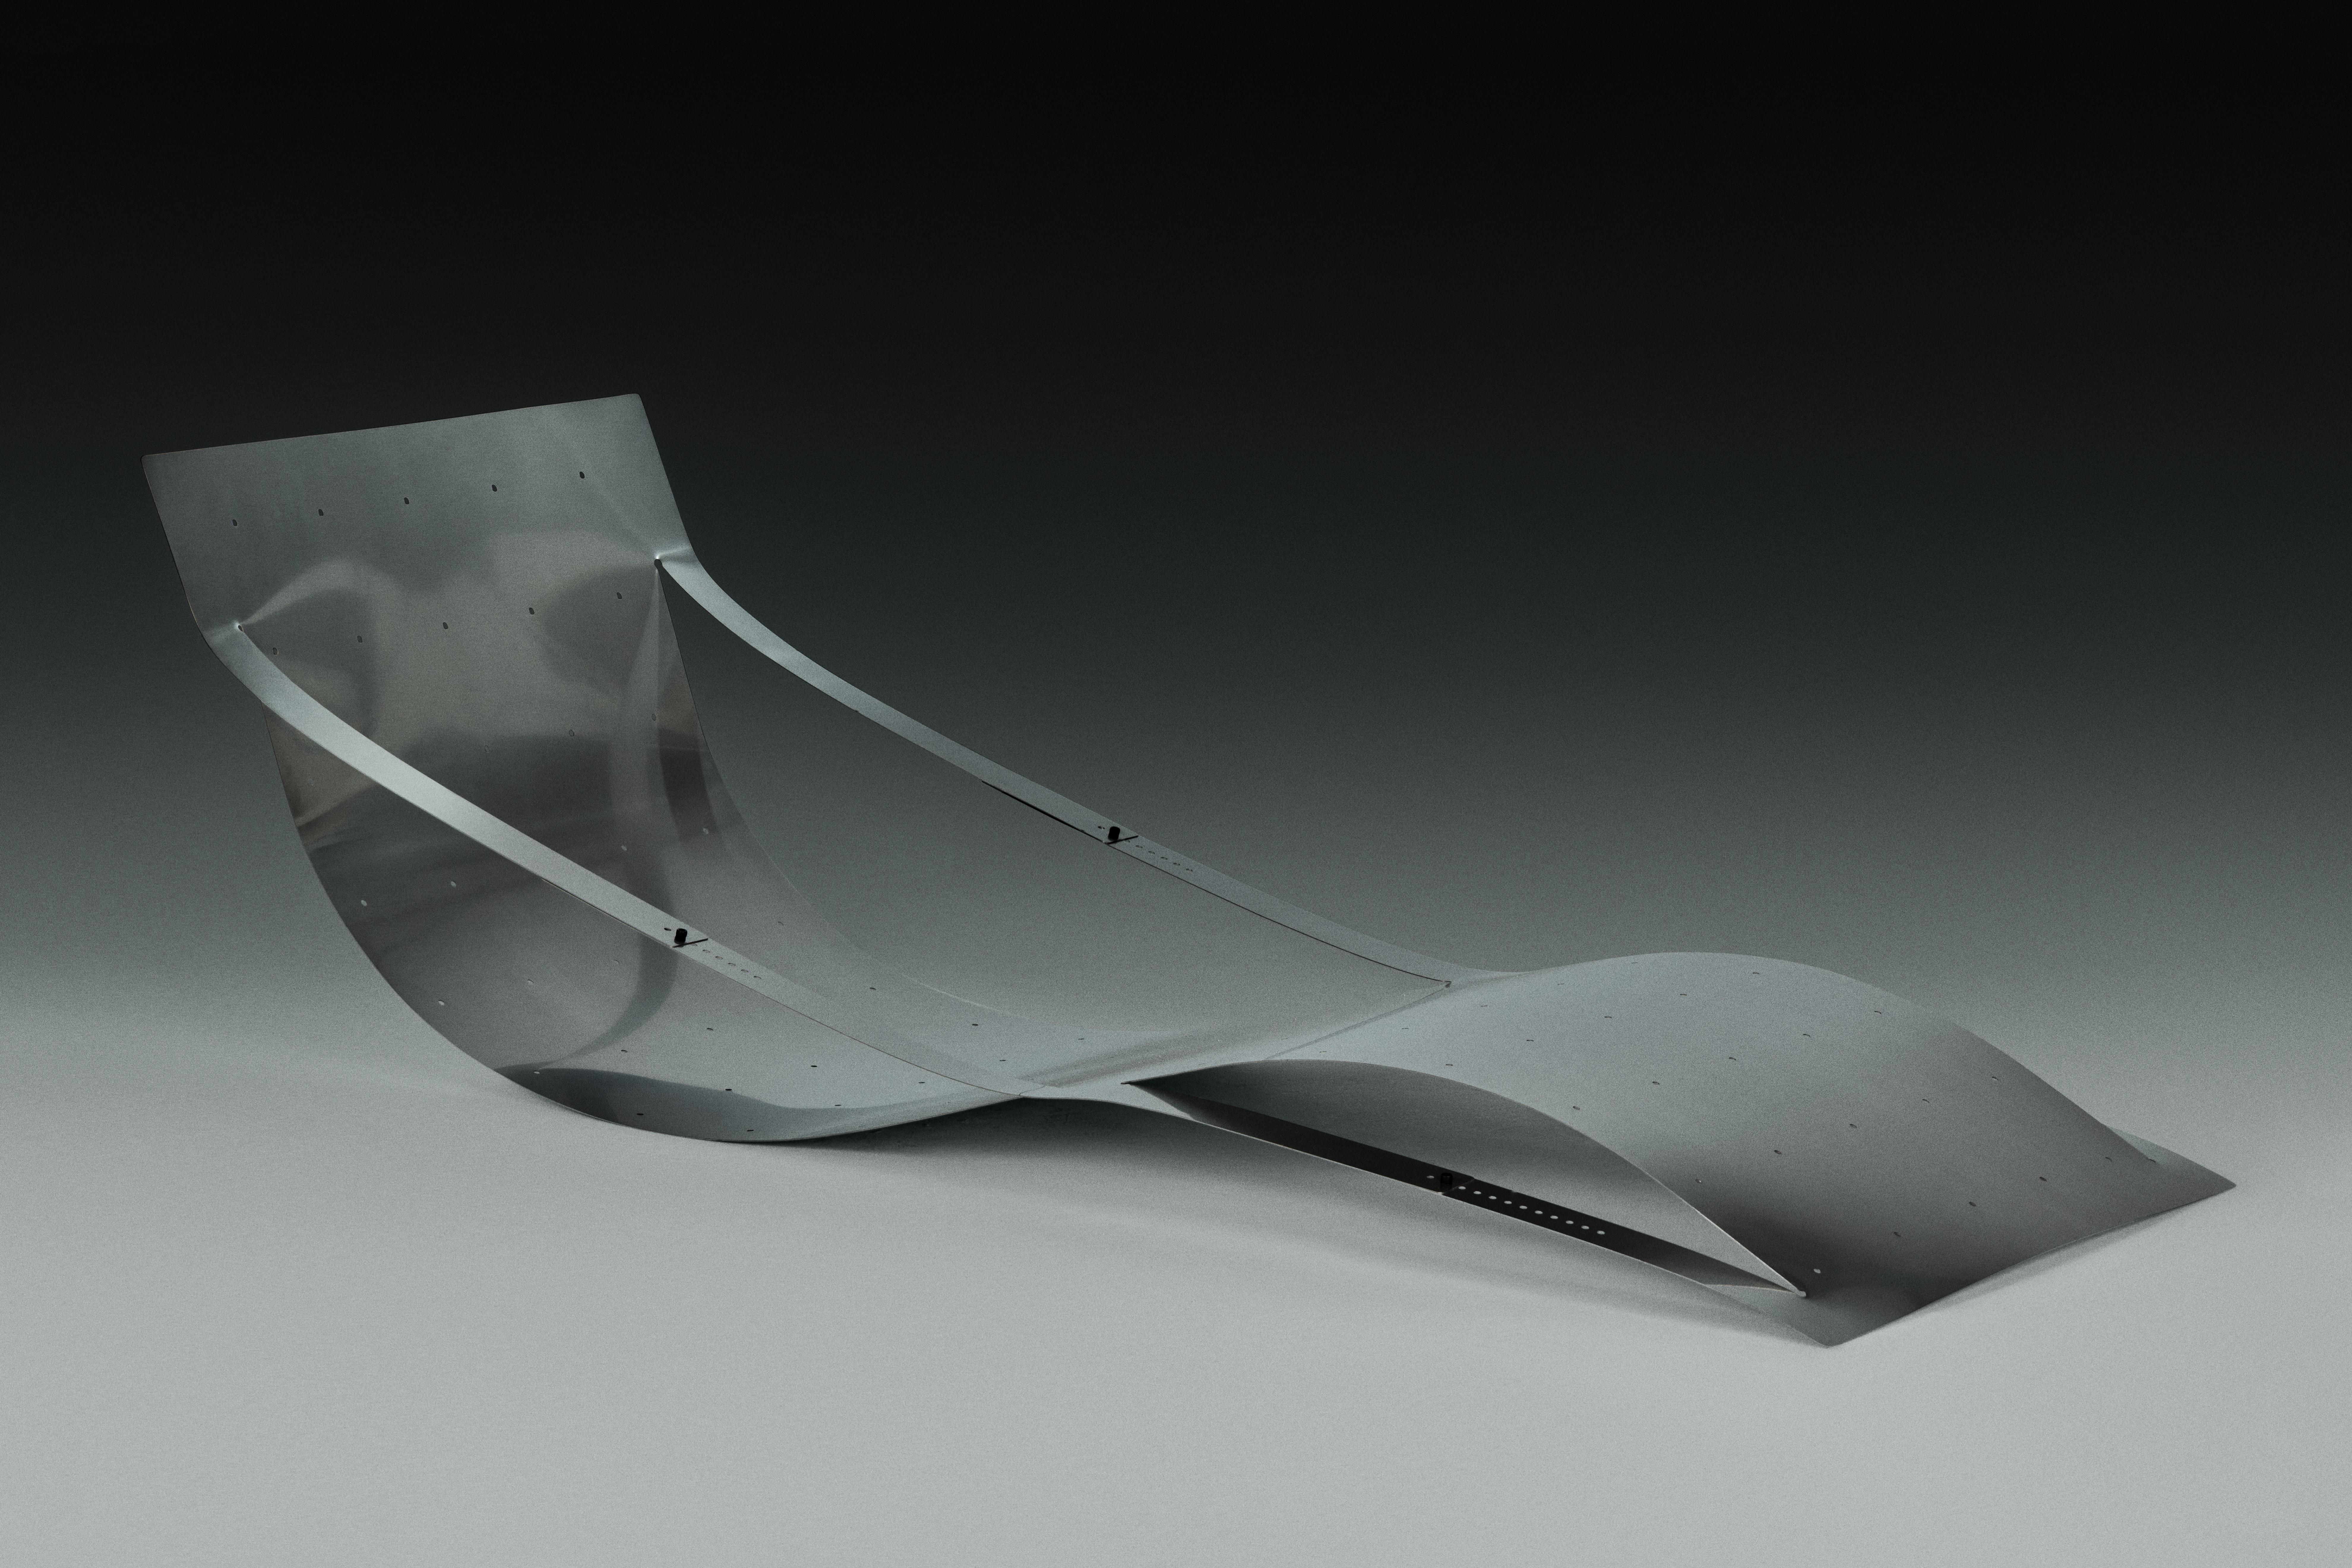 Fauteuil Folio de Kutarq Studio
Matériaux : Acier inoxydable.
Dimensions : D 200 x L 72 x H 42 cm

La chaise longue FOLIO explore les qualités de traction de l'acier, en prenant l'apparence visuelle du papier plié.
En fonction de la position des